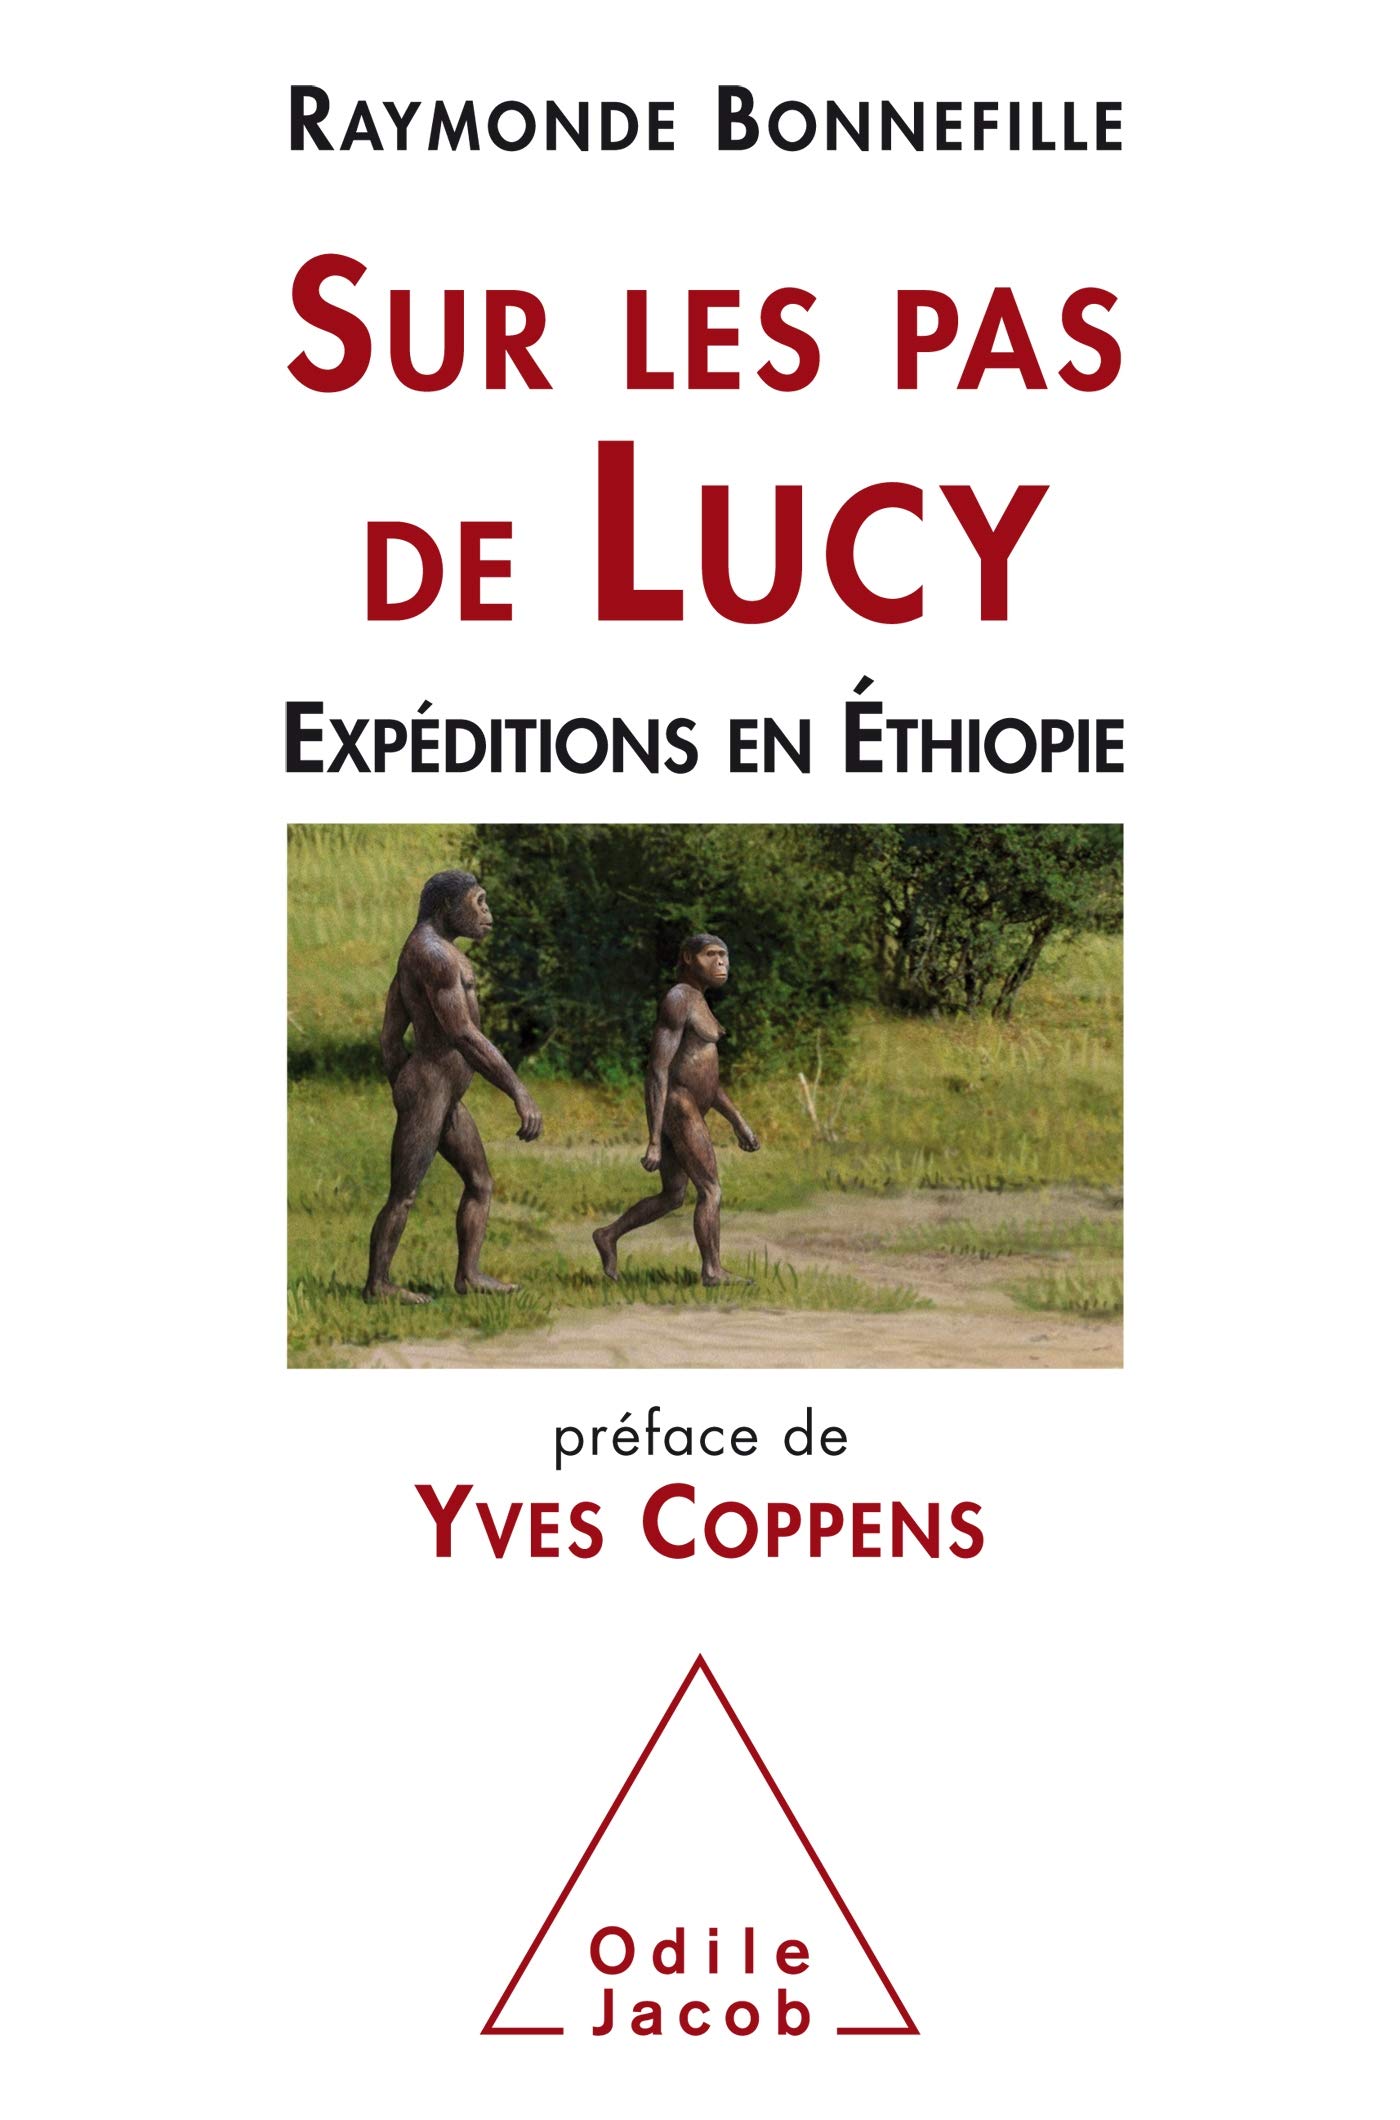 Sur les pas de Lucy. Expédition en Ethiopie, 2018, 366 p.